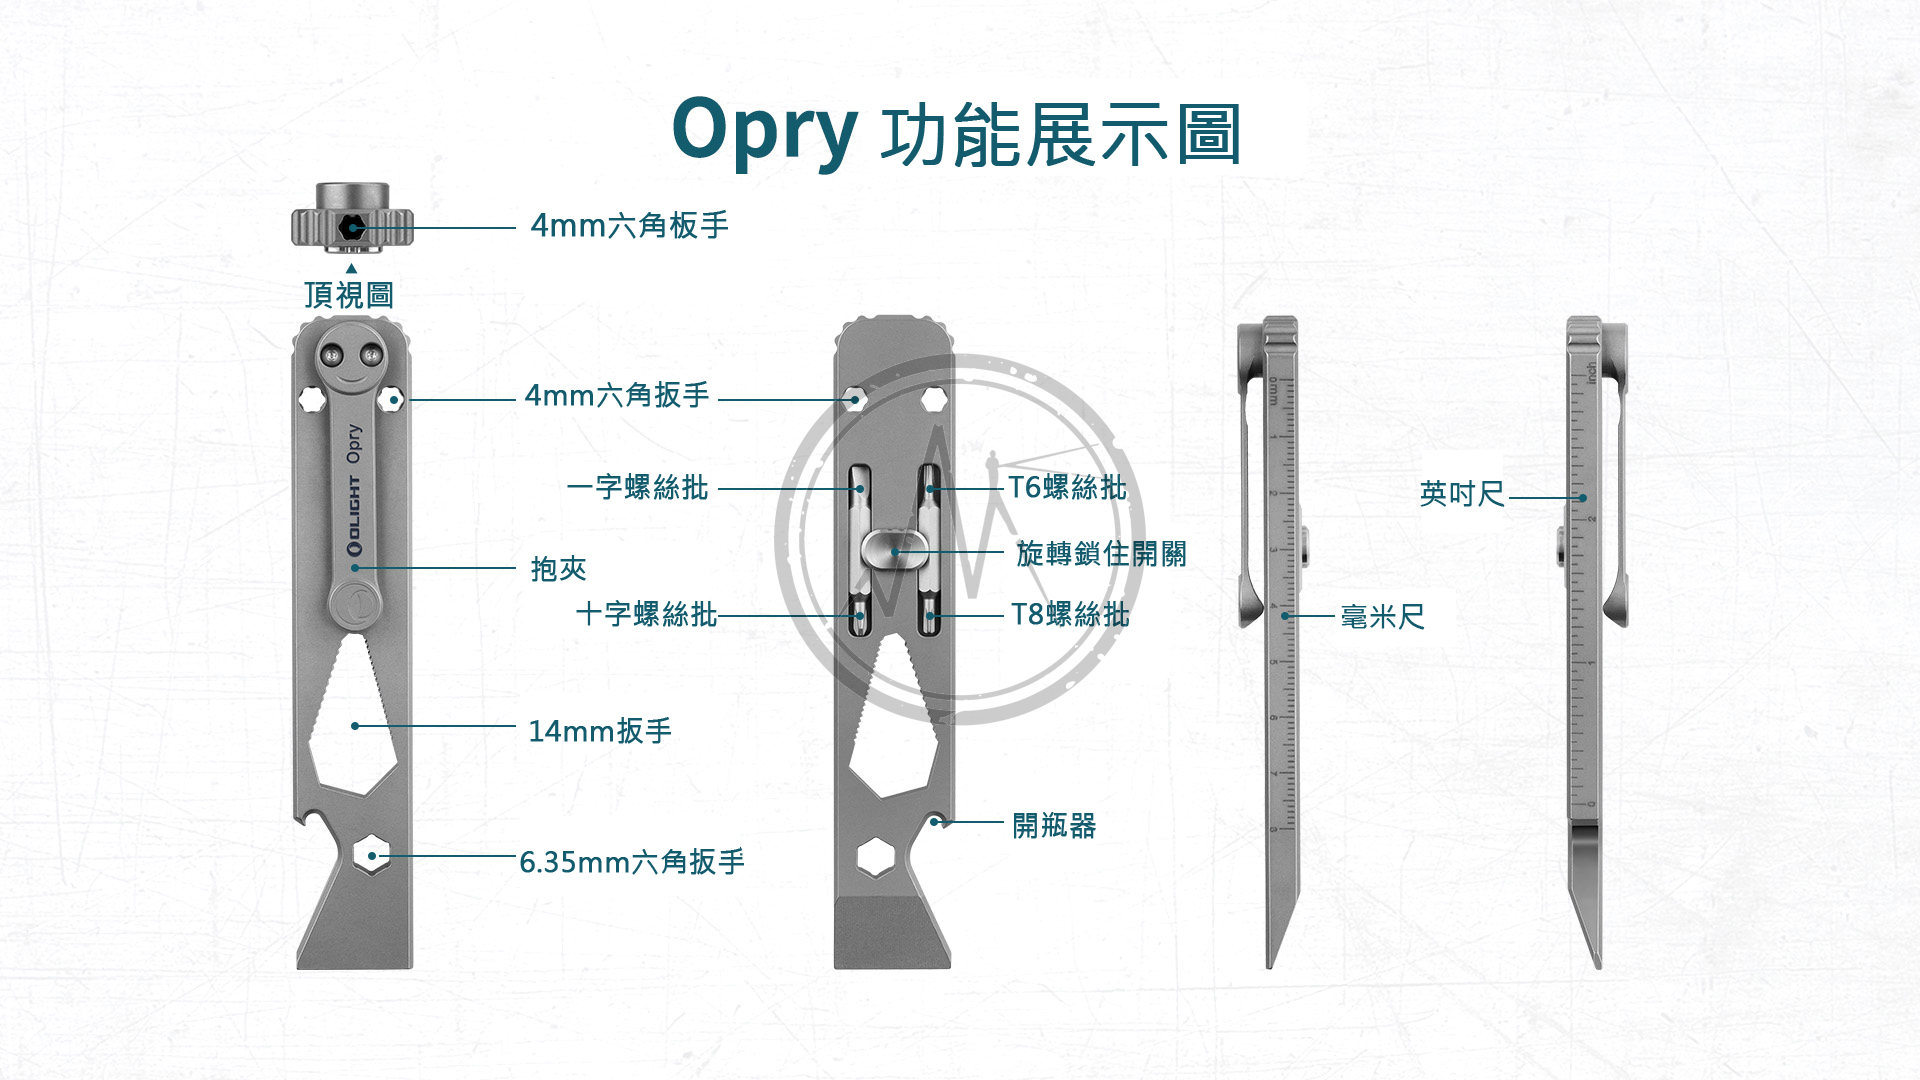 【停產】Olight Opry TC4 鈦合金多功能工具組 5合1 六角/一字/十字/扳手/T6螺絲/T8螺絲